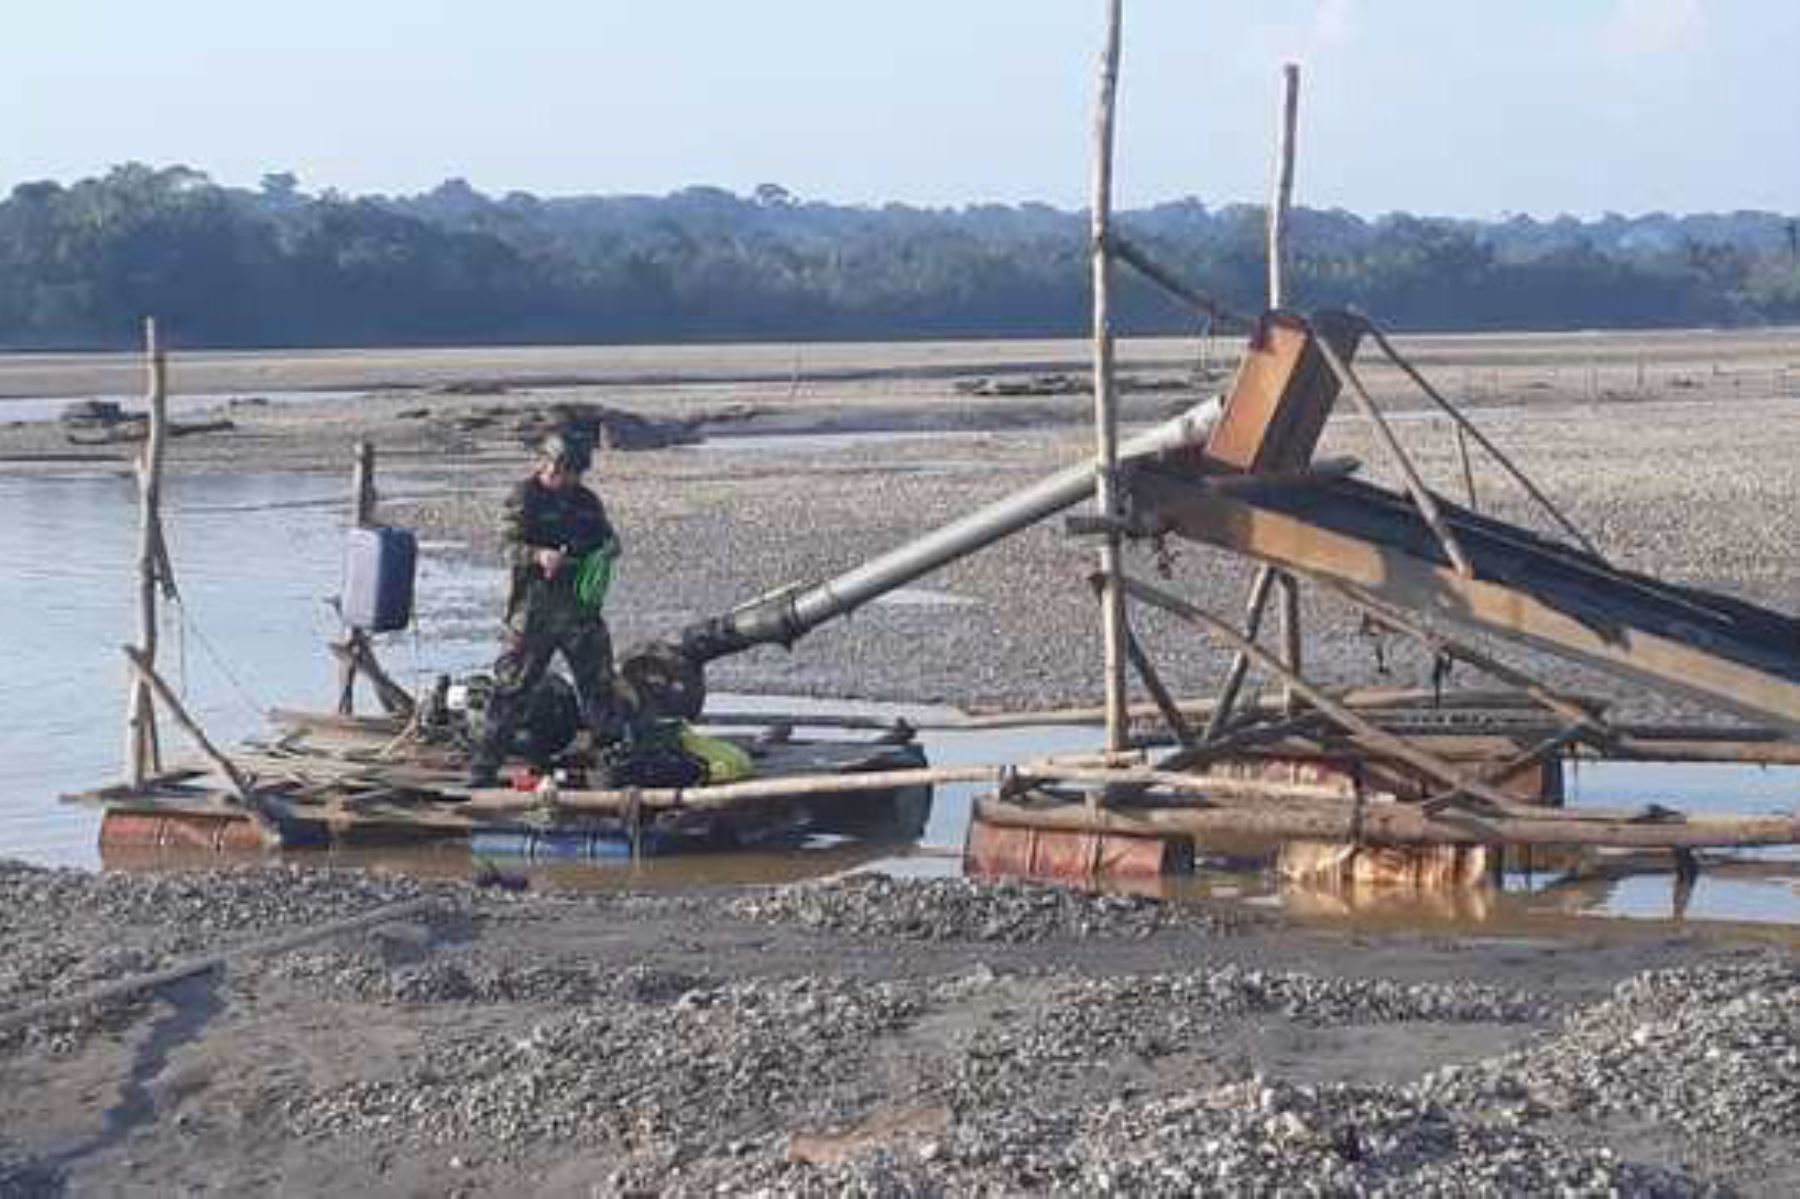 La Policía Nacional del Perú (PNP) destruyó equipos e instrumentos utilizados por mineros, tras un operativo de interdicción ejecutado en sectores de Puerto Arturo y la comunidad de Otilia, en el distrito y provincia de Tambopata, región Madre de Dios.